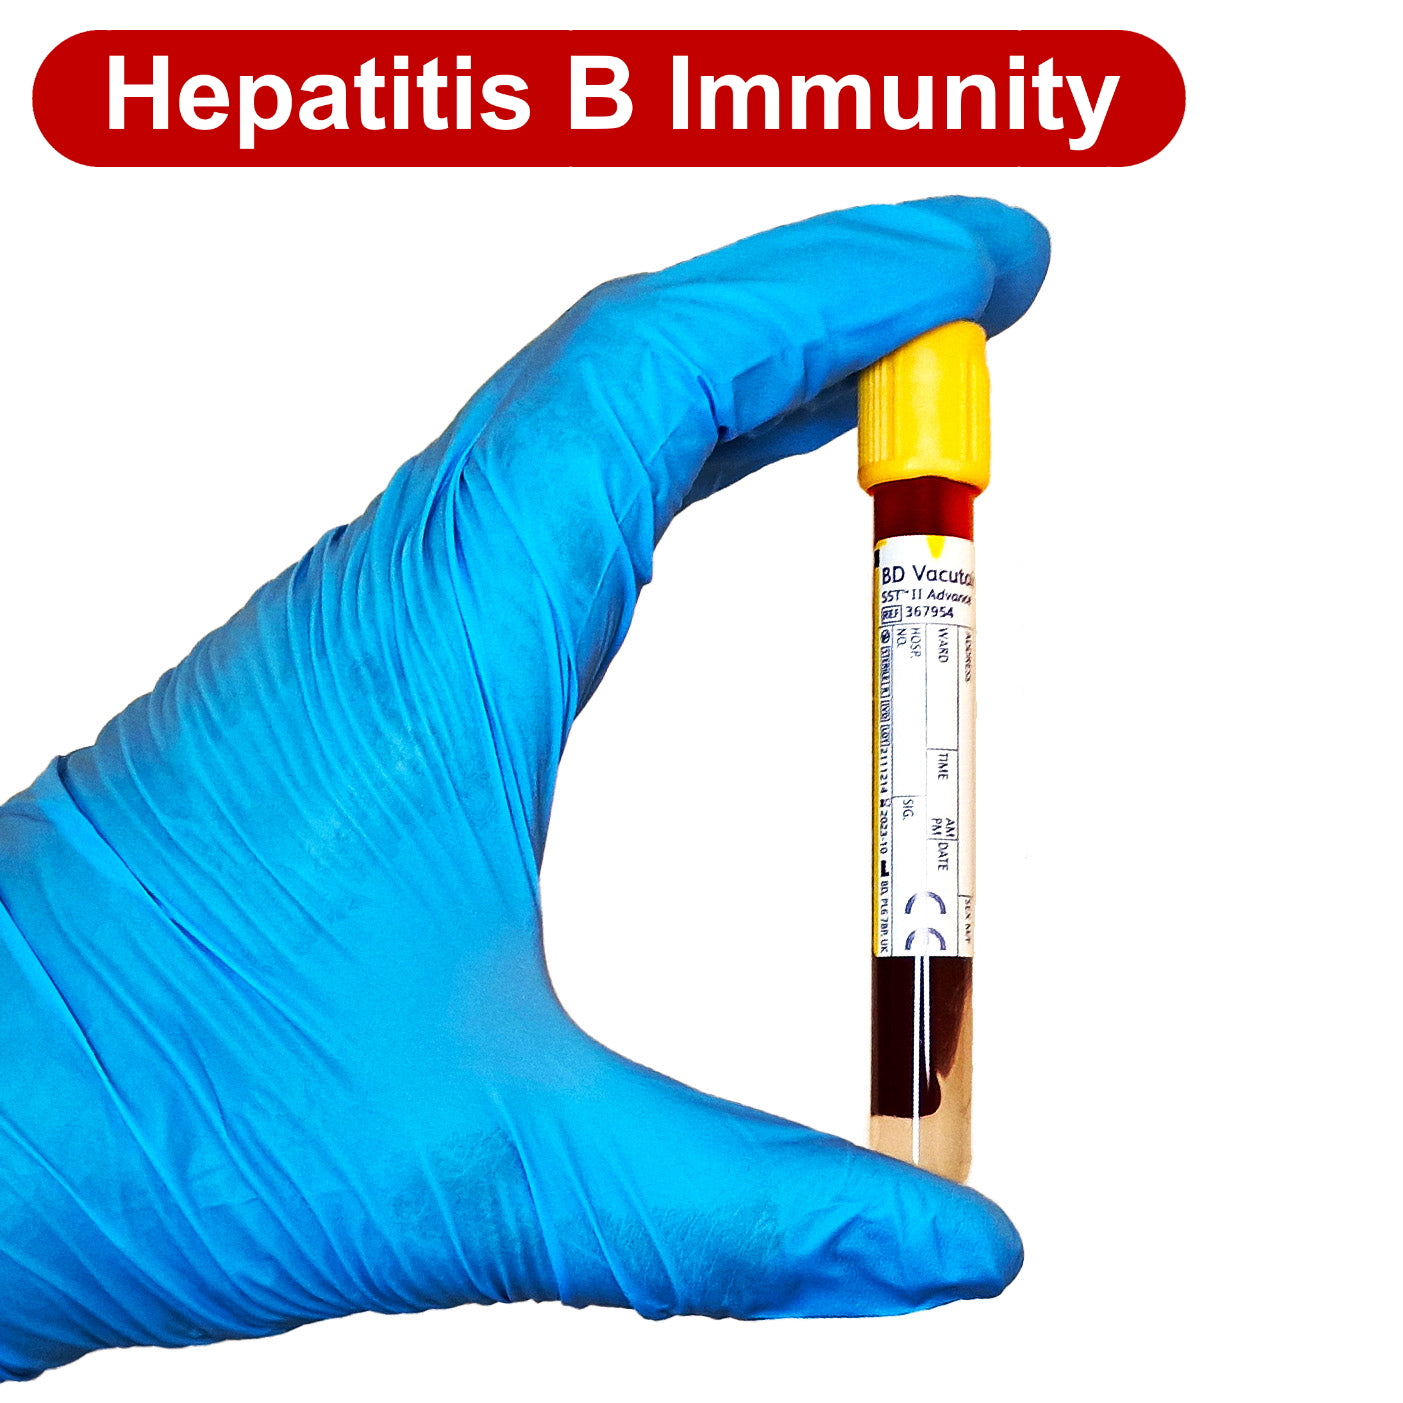 Hepatitis B Immunity Blood Test